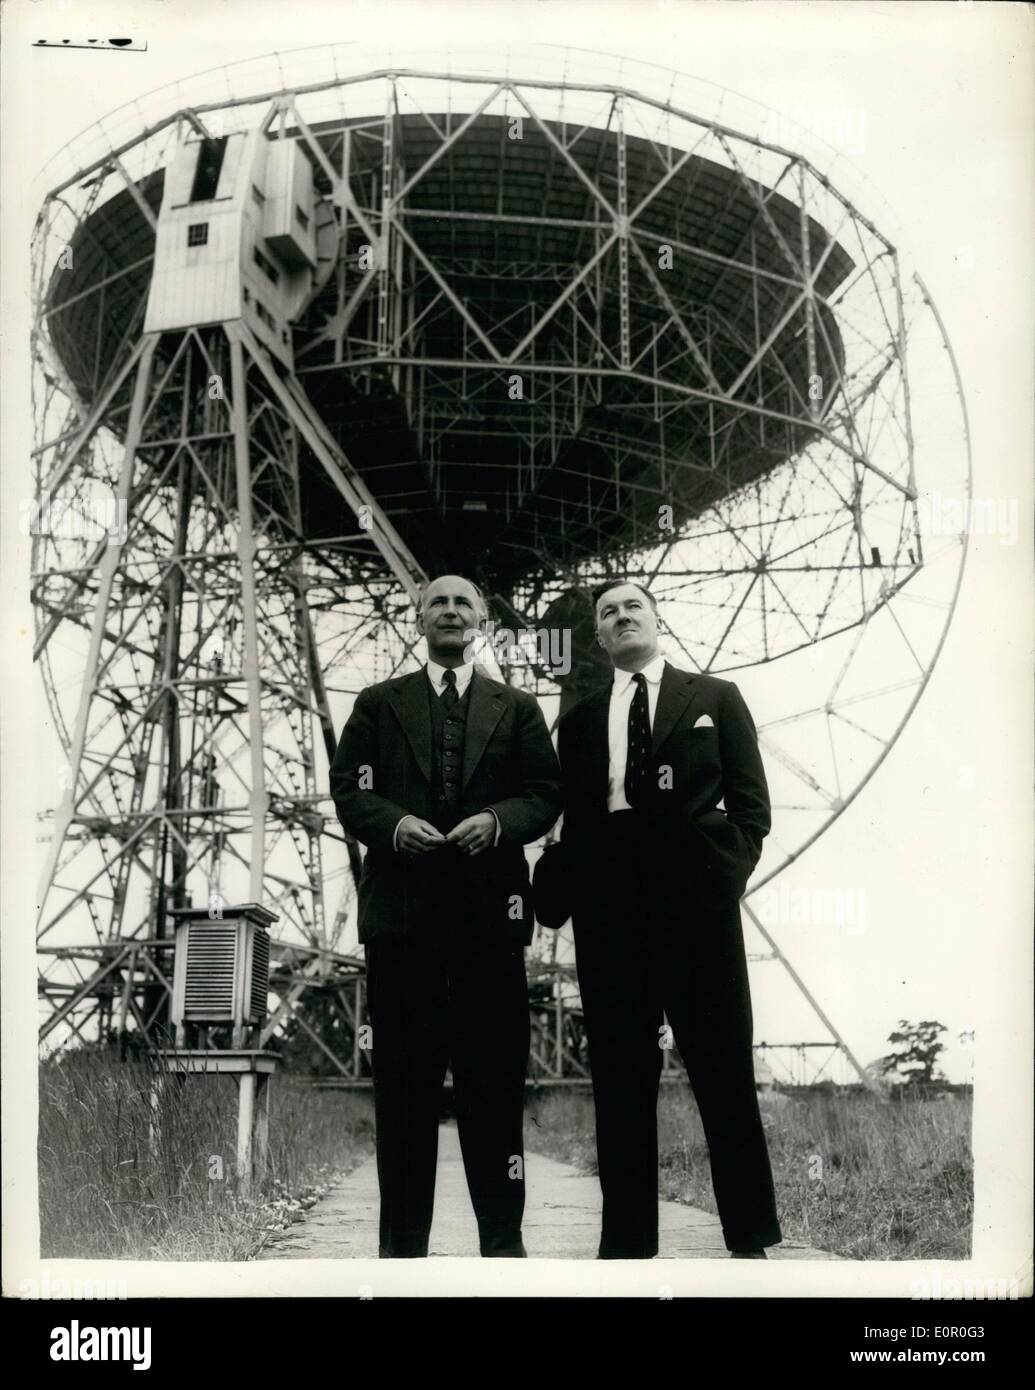 06 de junio de 1957 - el Telescopio de Radio más grande del mundo para la Investigación Científica en la atmósfera: El Telescopio de Radio más grande del mundo fue mostrado a la prensa ayer por primera vez. Construido en Jodrell Bank, Cheshire para la Universidad de Manchester a un costo de aproximadamente 650,000. Consiste en un gigantesco cuenco de malla de cobre de 750 toneladas suspendido entre las torres de 180 pies. Los fondos para su construcción fueron proporcionados por el Departamento de Investigación Científica y la Fundación Nuffield. El diámetro del tazón es de 250ft. Y los mástiles aéreos 62ft. Alto Foto de stock